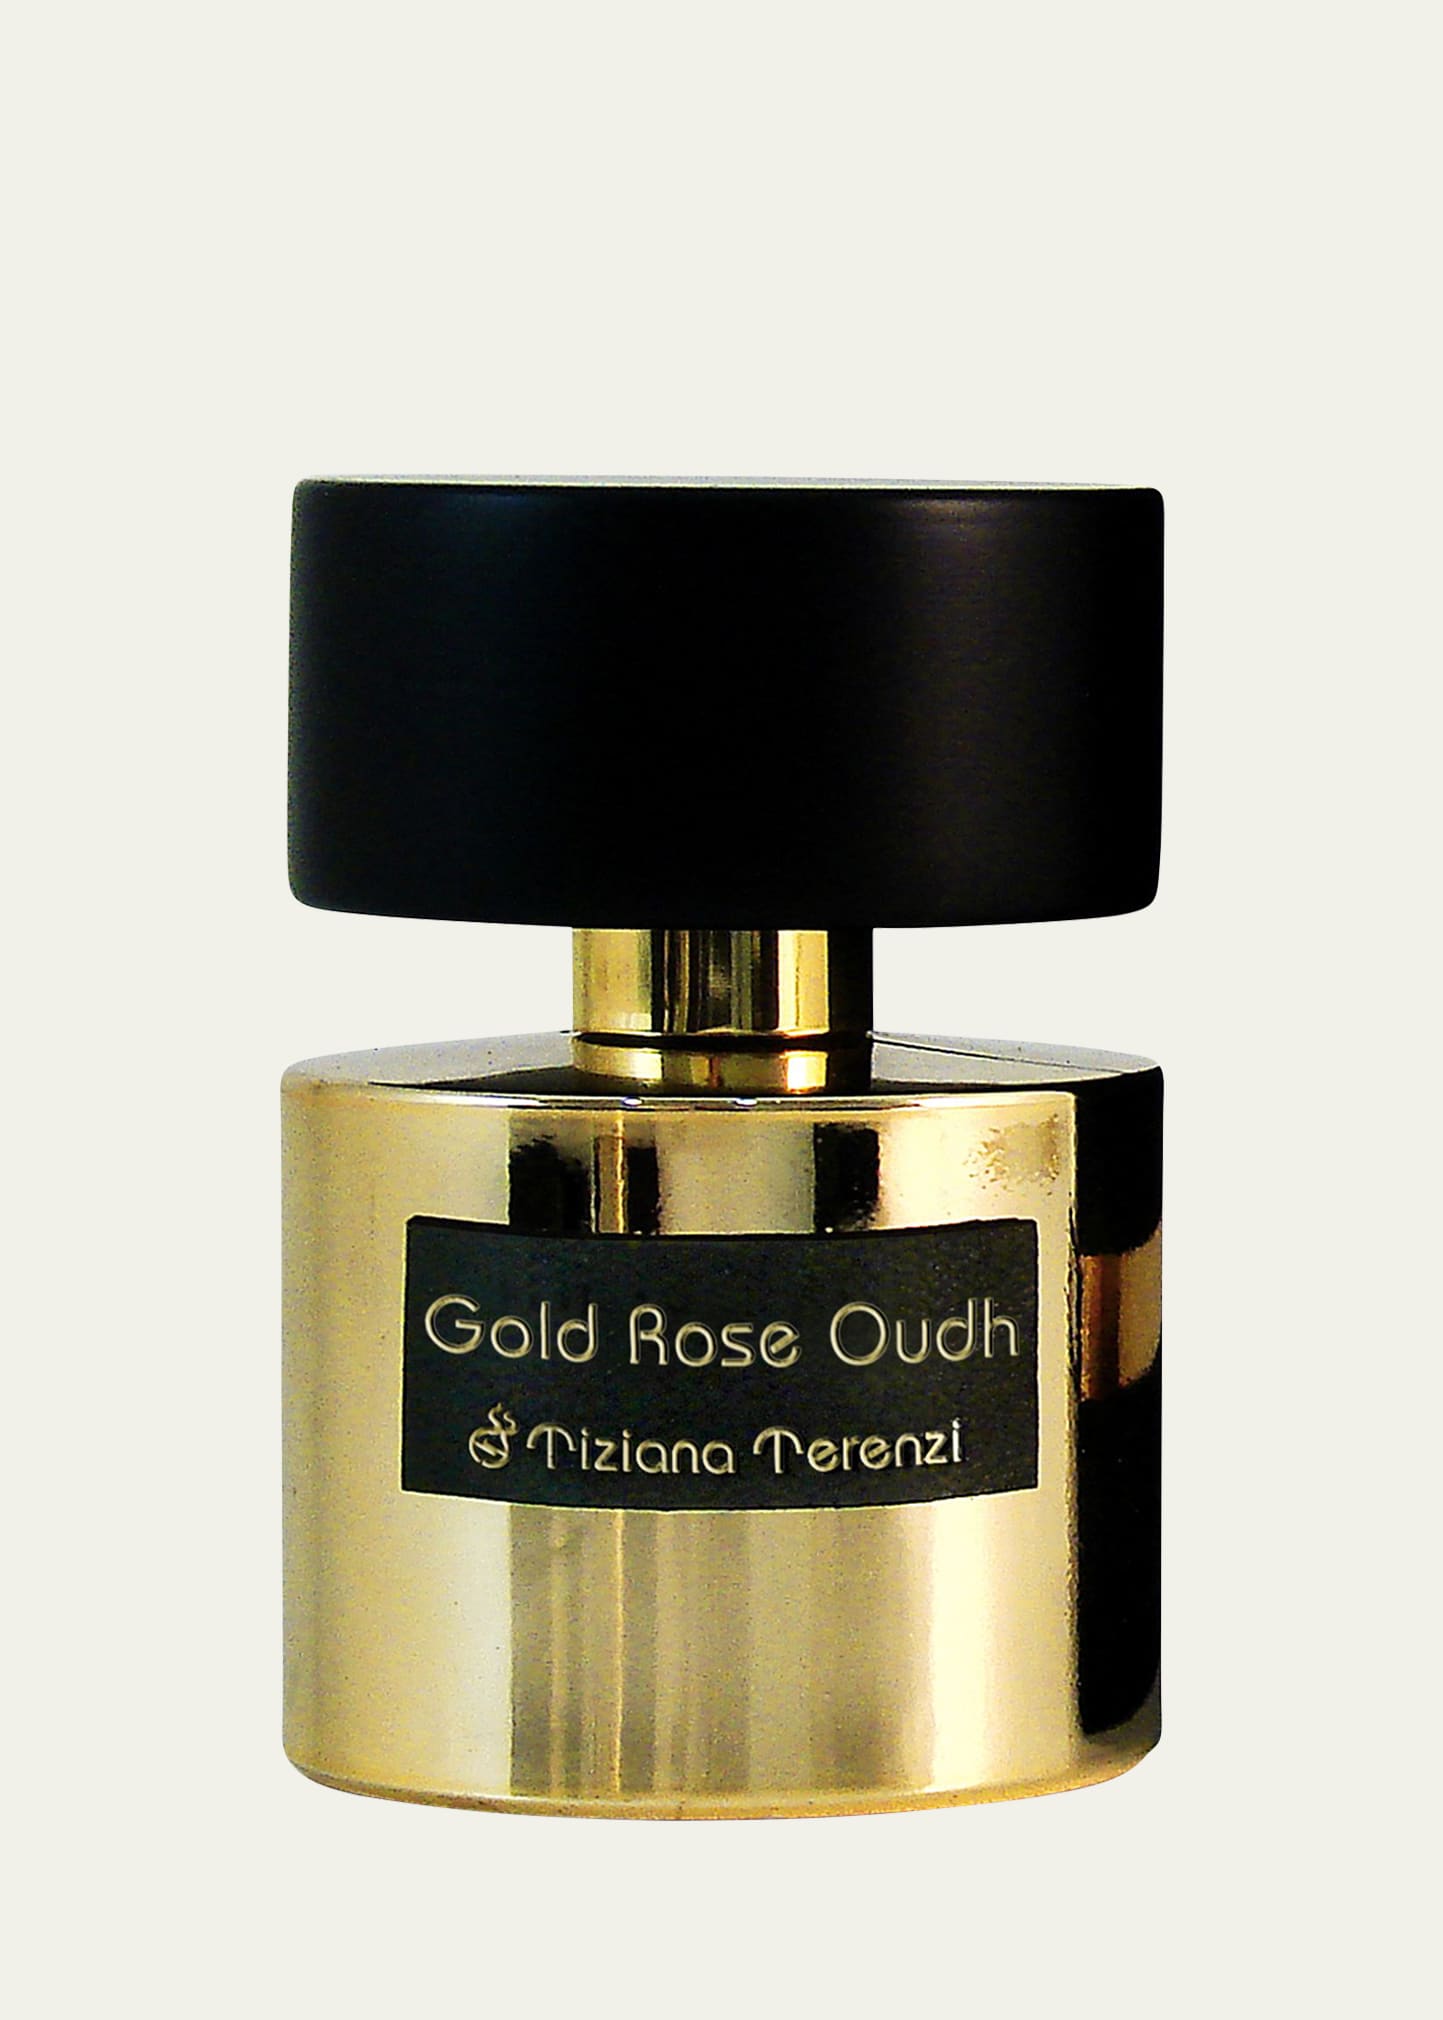 Gold Rose Oudh Extrait de Parfum, 3.4 oz.